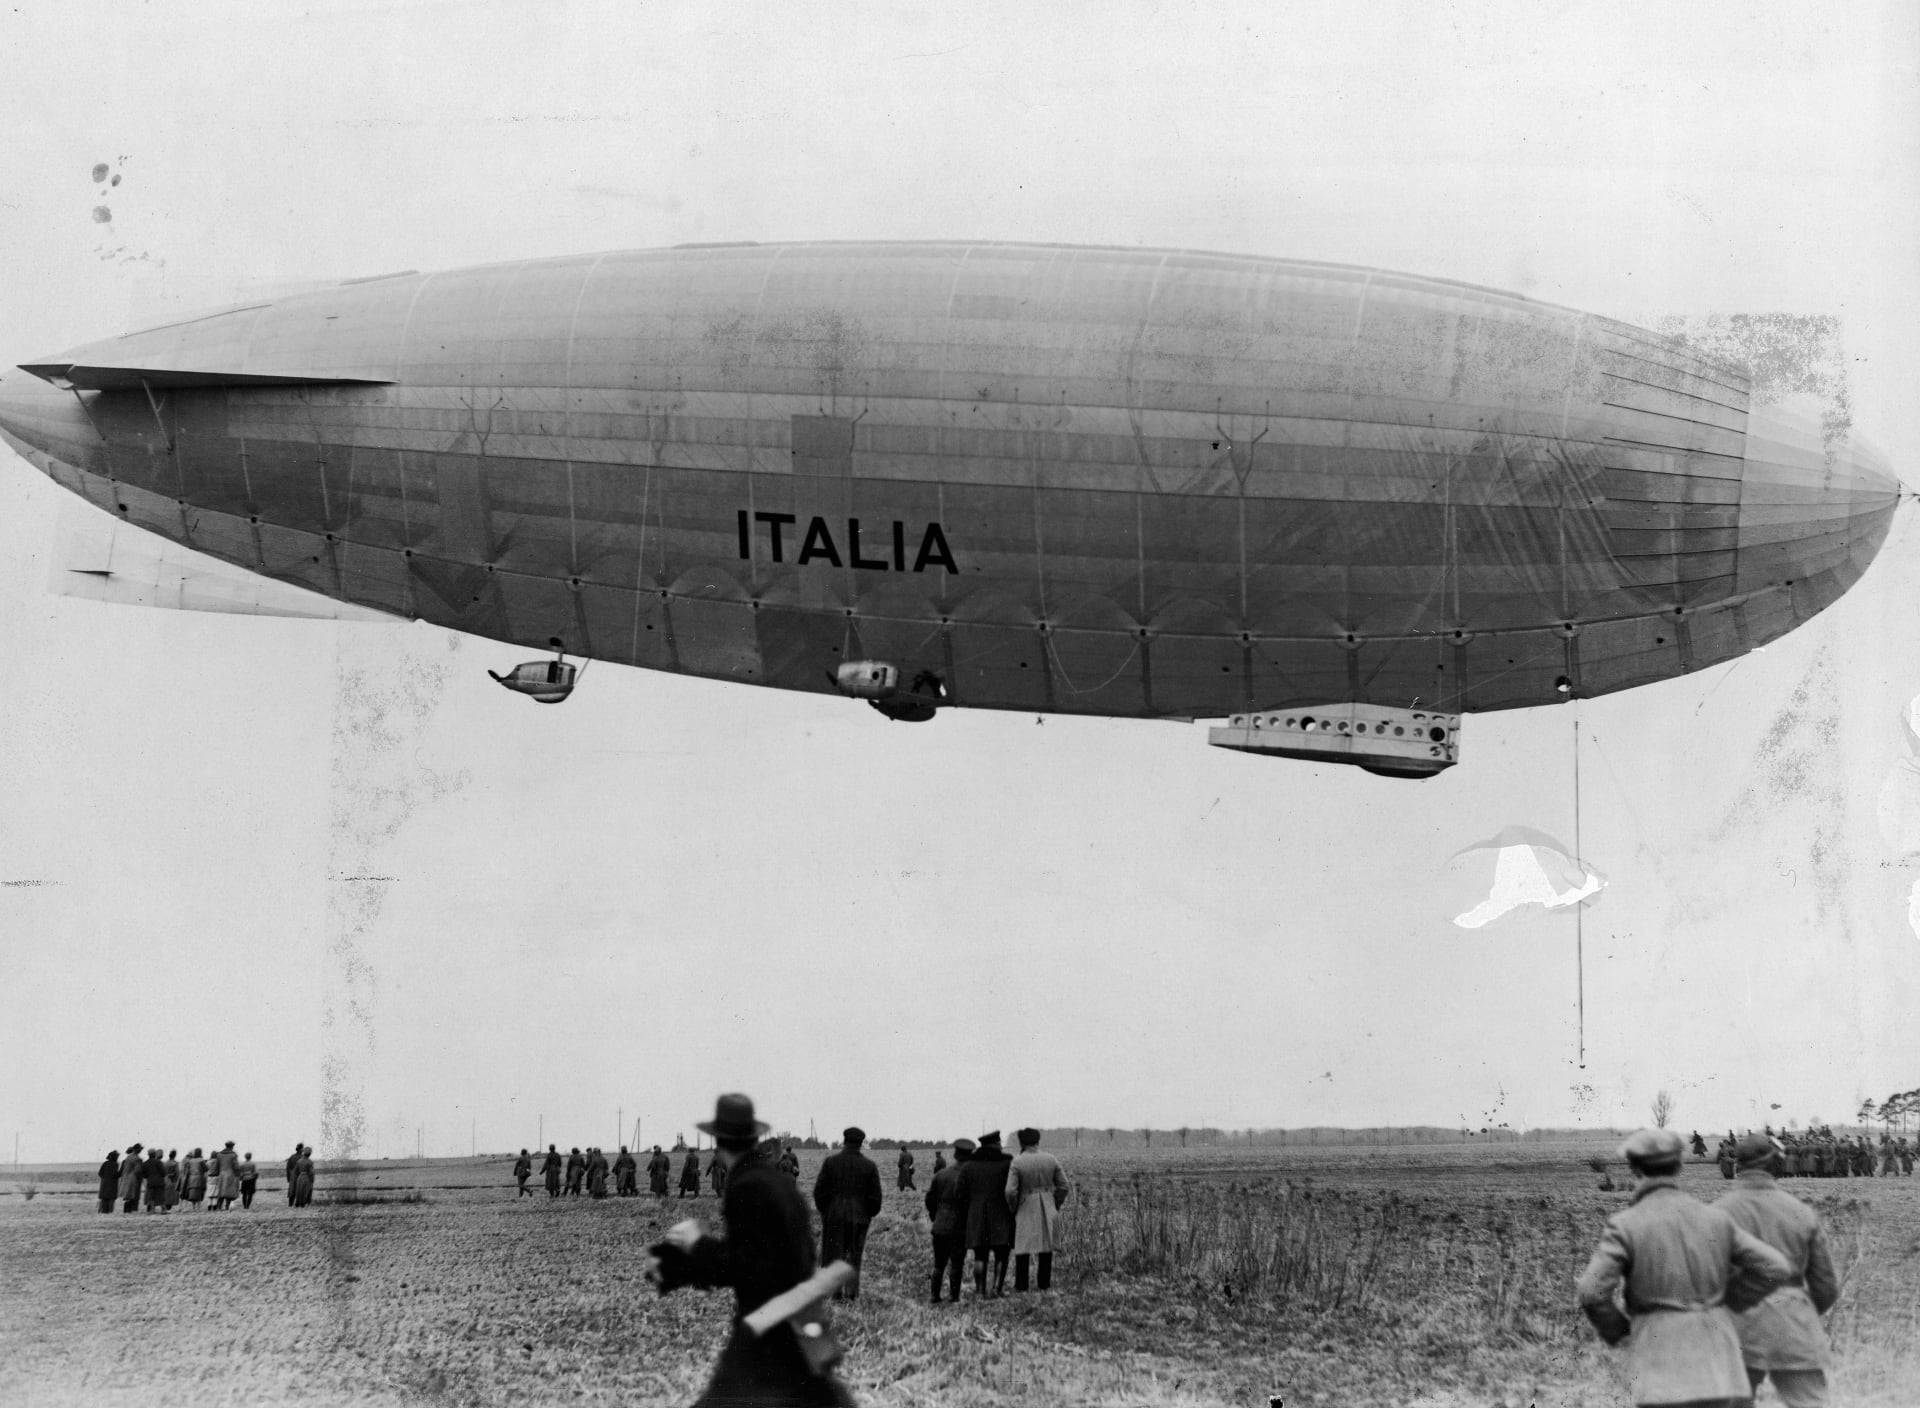 Vzducholoď Italia, které se Amundsen vydal na pomoc